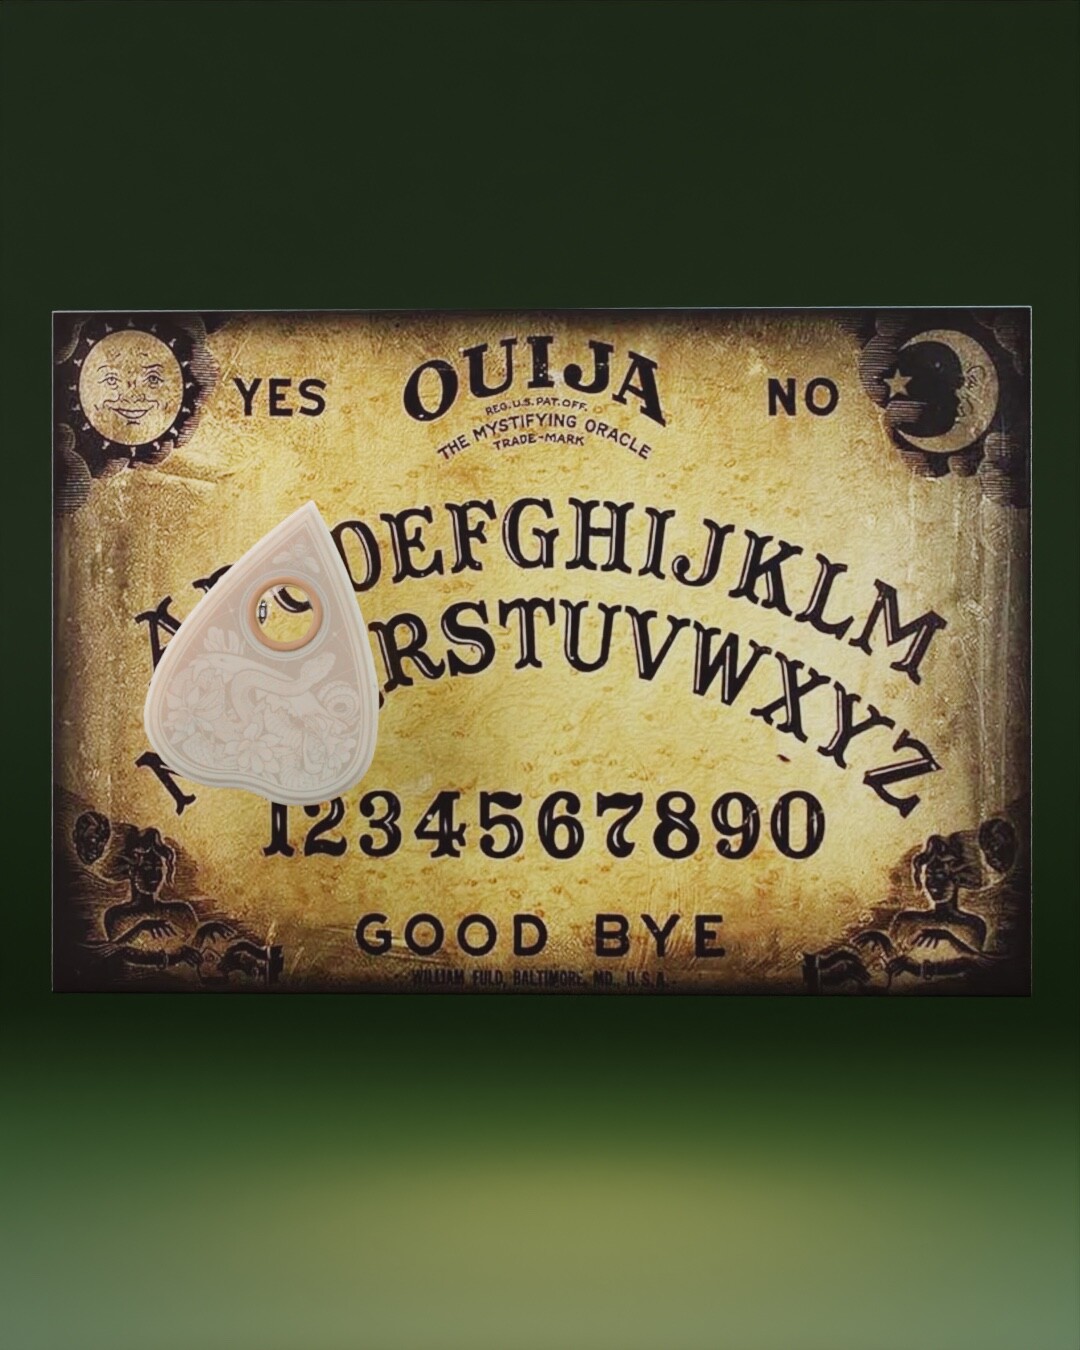 ArtStation - Ouija Board